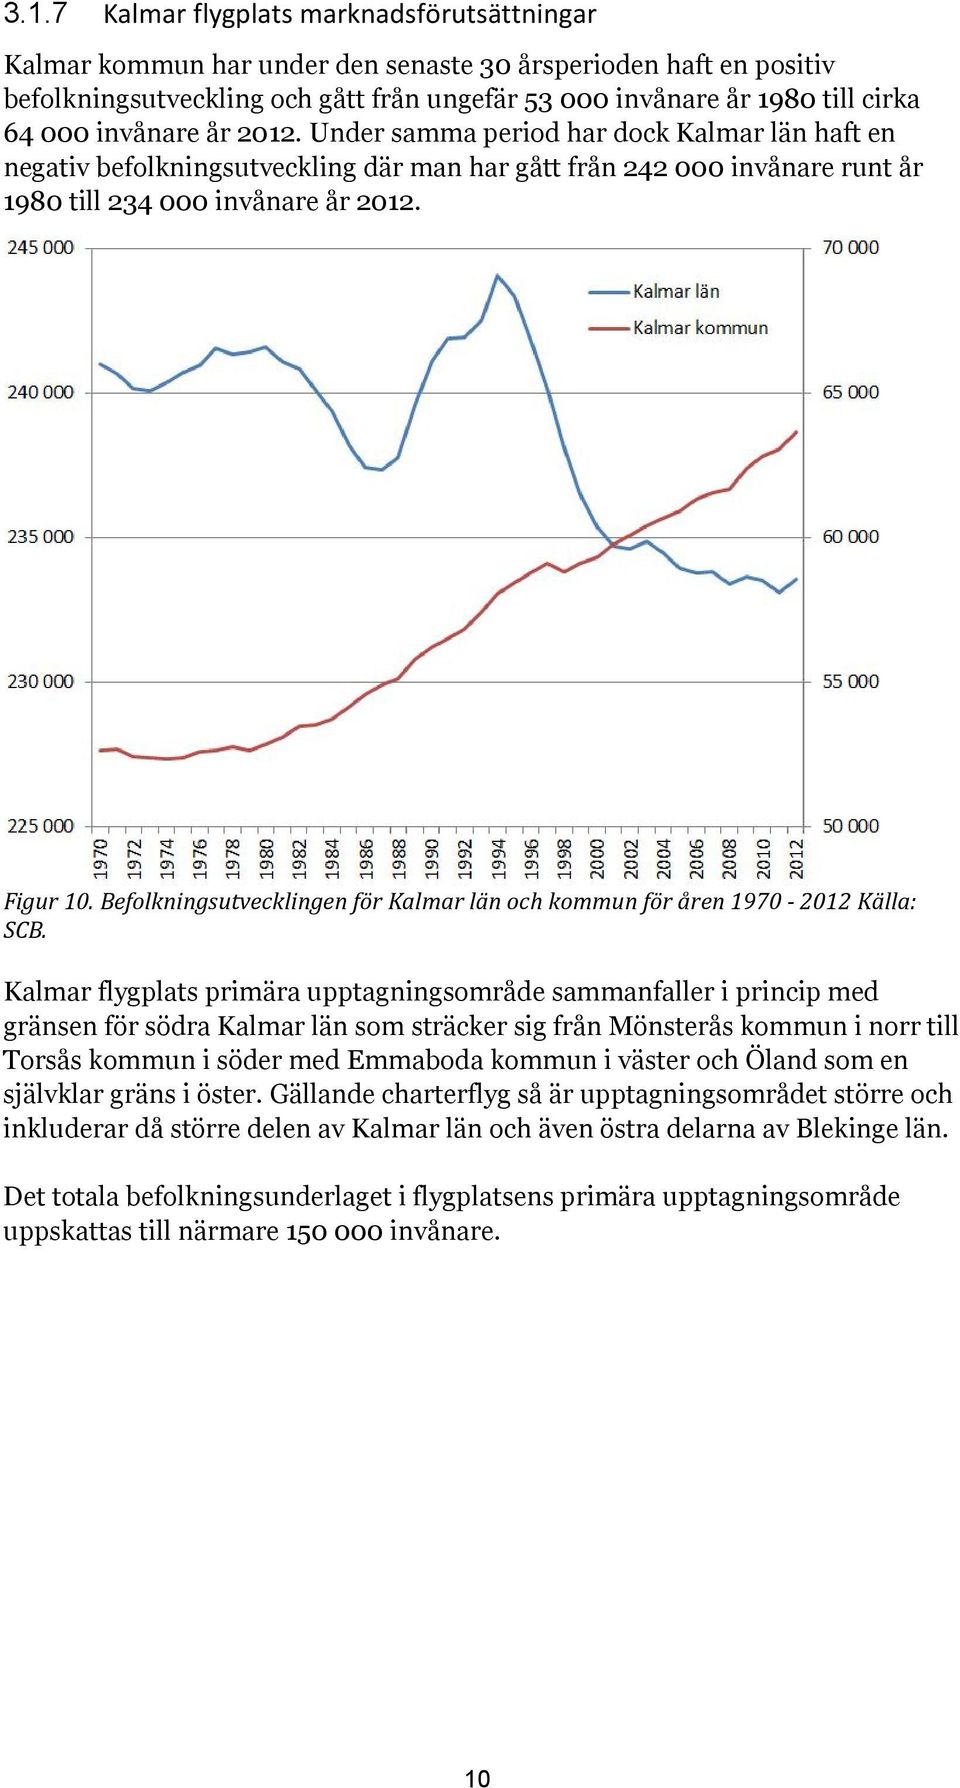 Befolkningsutvecklingen för Kalmar län och kommun för åren 1970-2012 Källa: SCB.